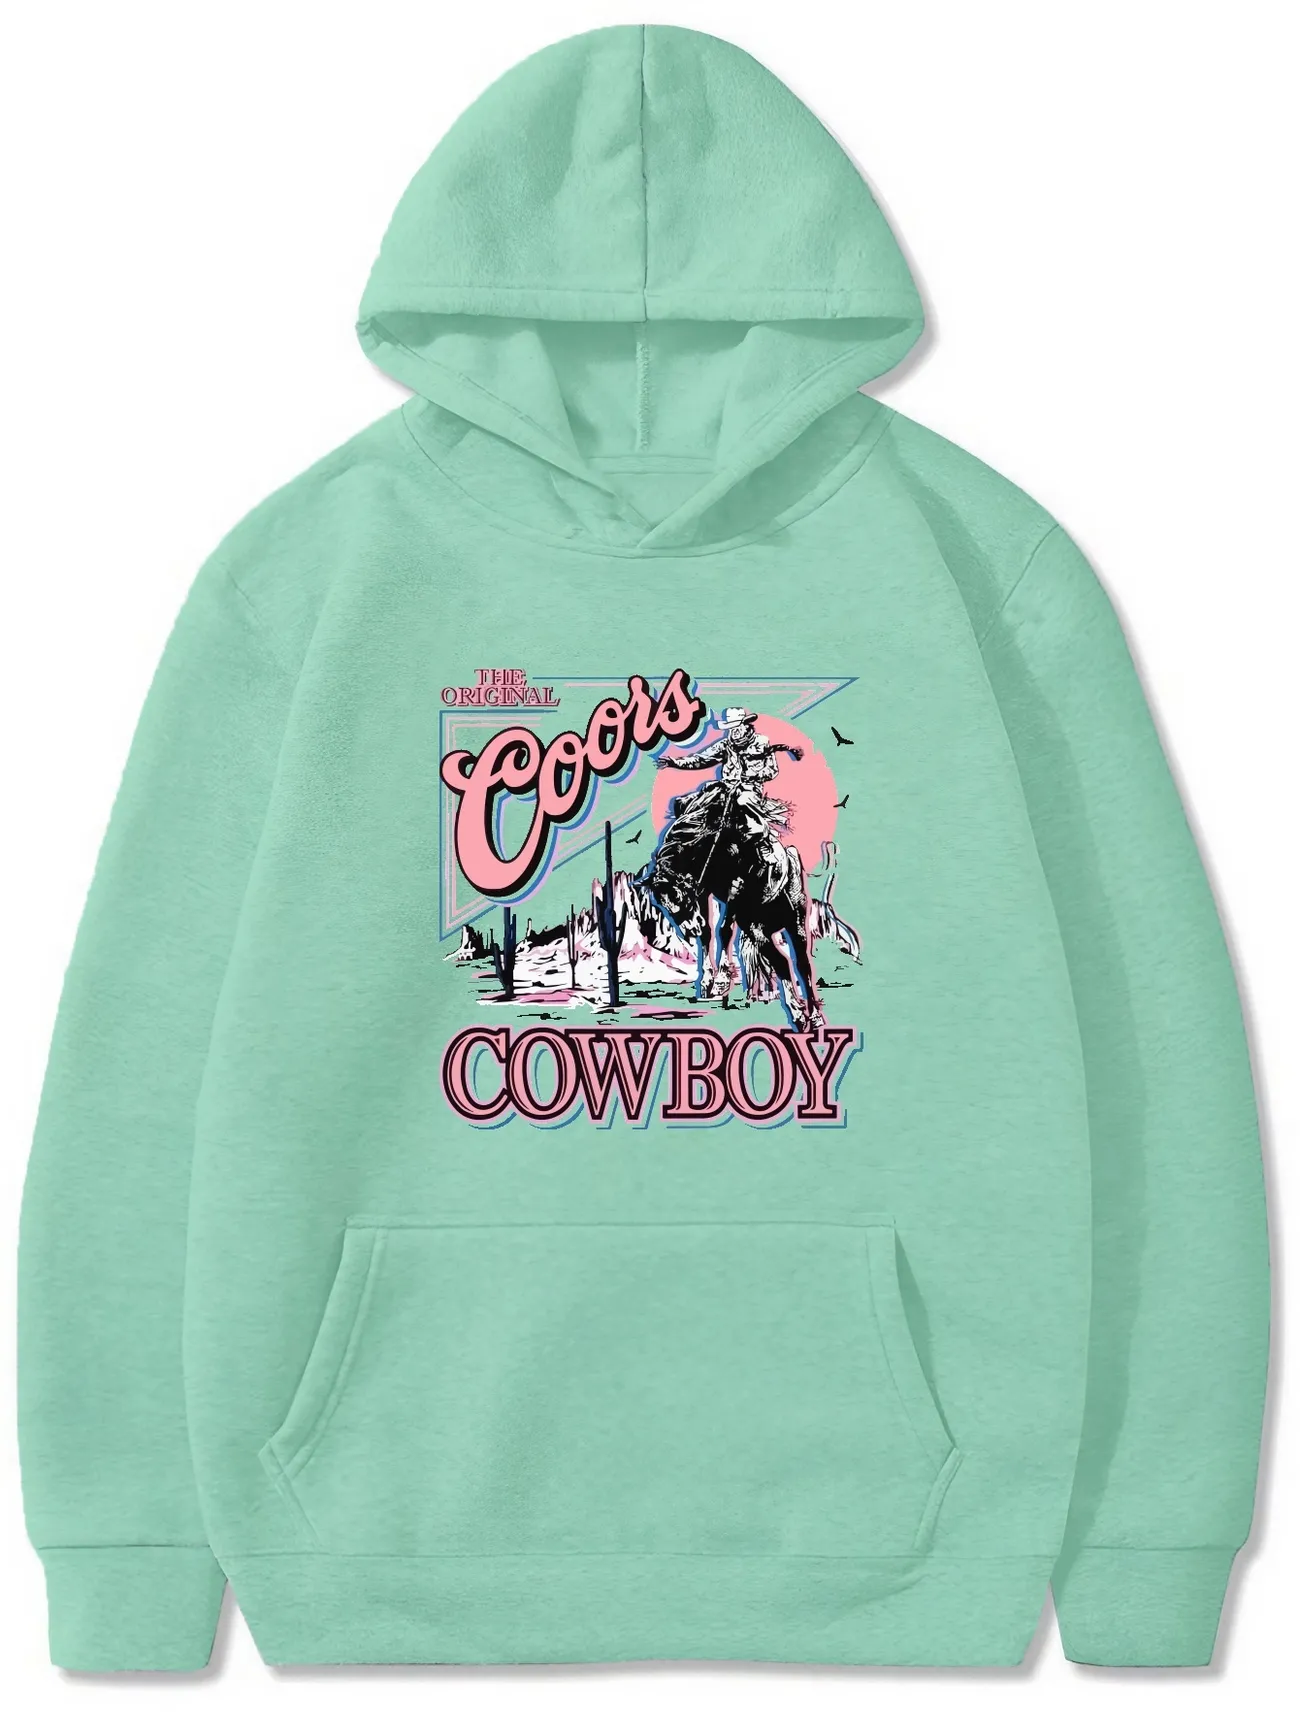 Temu geometric-pattern Retro Cowboy Sweatshirt, Men's Cool Casual Graphic Design Hooded Sweatshirt Kangaroo Pocket Streetwear Fall Gifts Hoodie Hoodies,